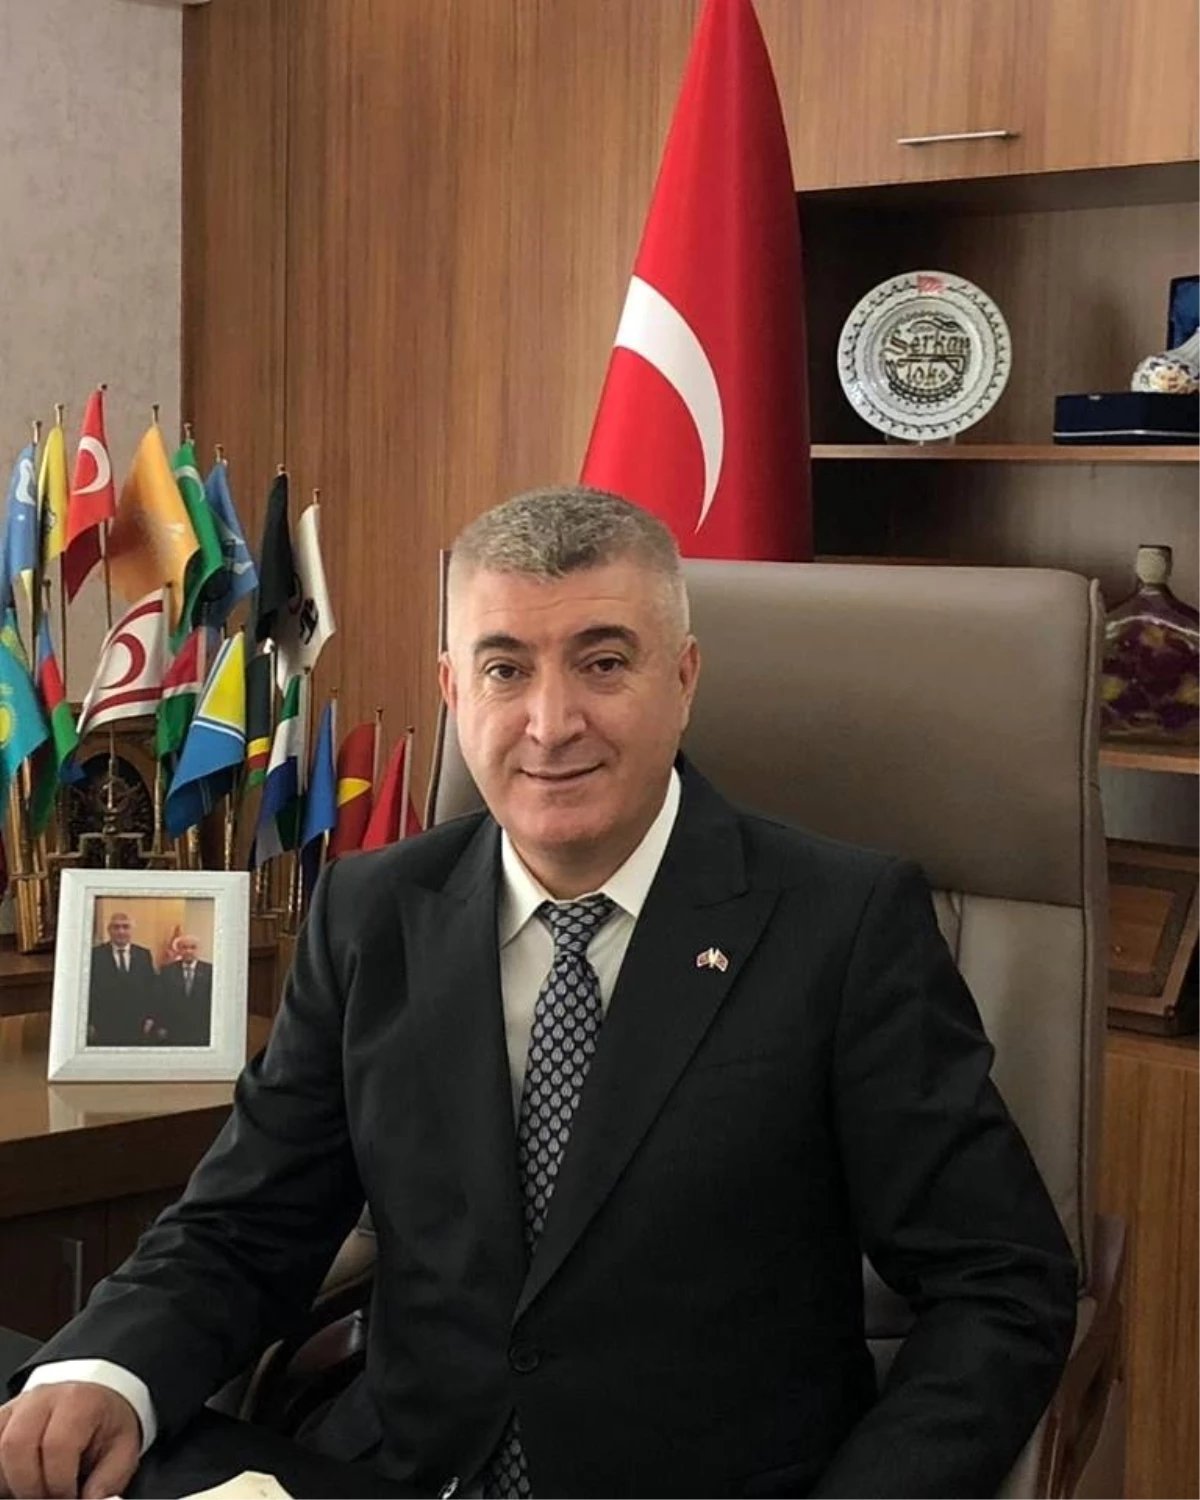 MHP İl Başkanı Serkan Tok, "Unutmak tükenmektir"